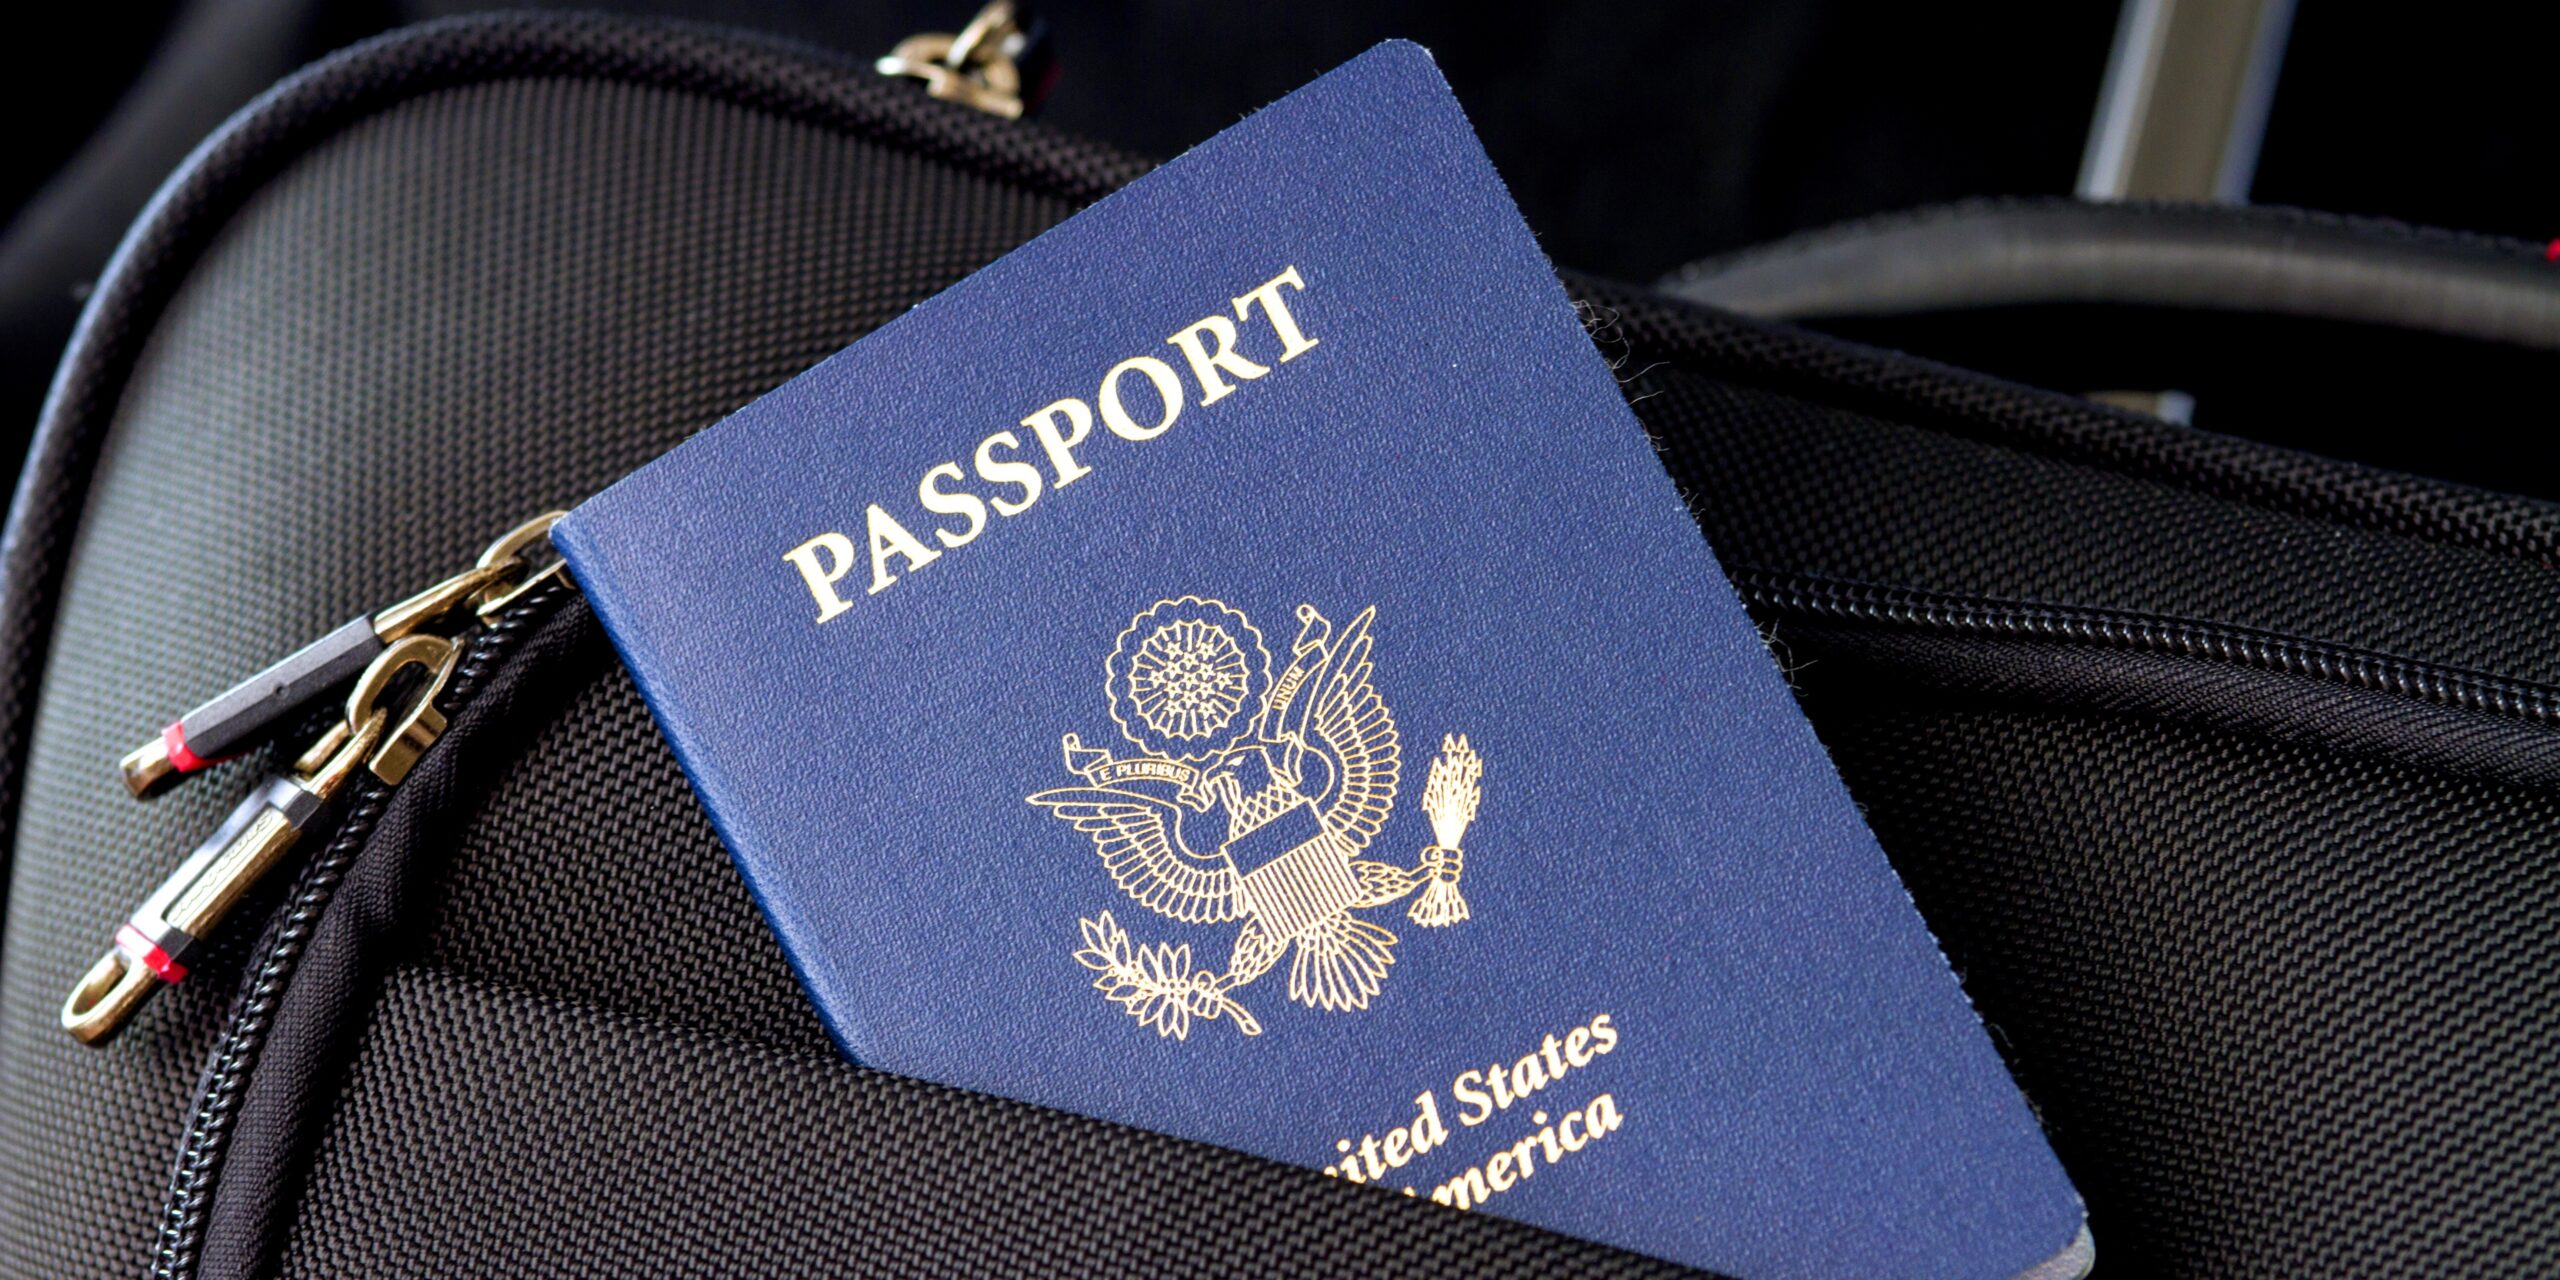 Γιατί δεν πρέπει ποτέ να βάζετε το διαβατήριό σας στη χειραποσκευή σας;